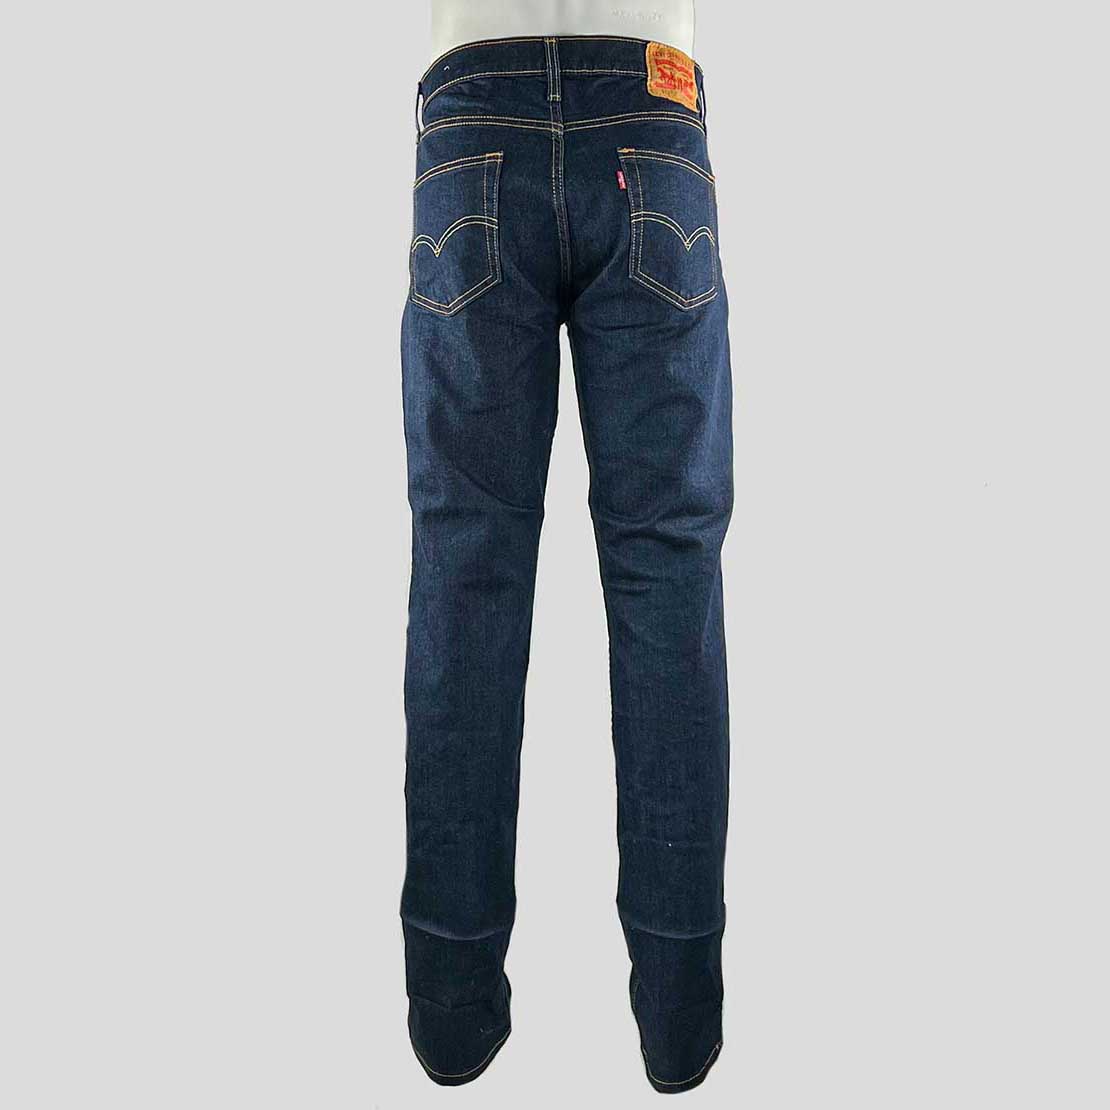 Levi's 511 Jeans - 34W x 34L